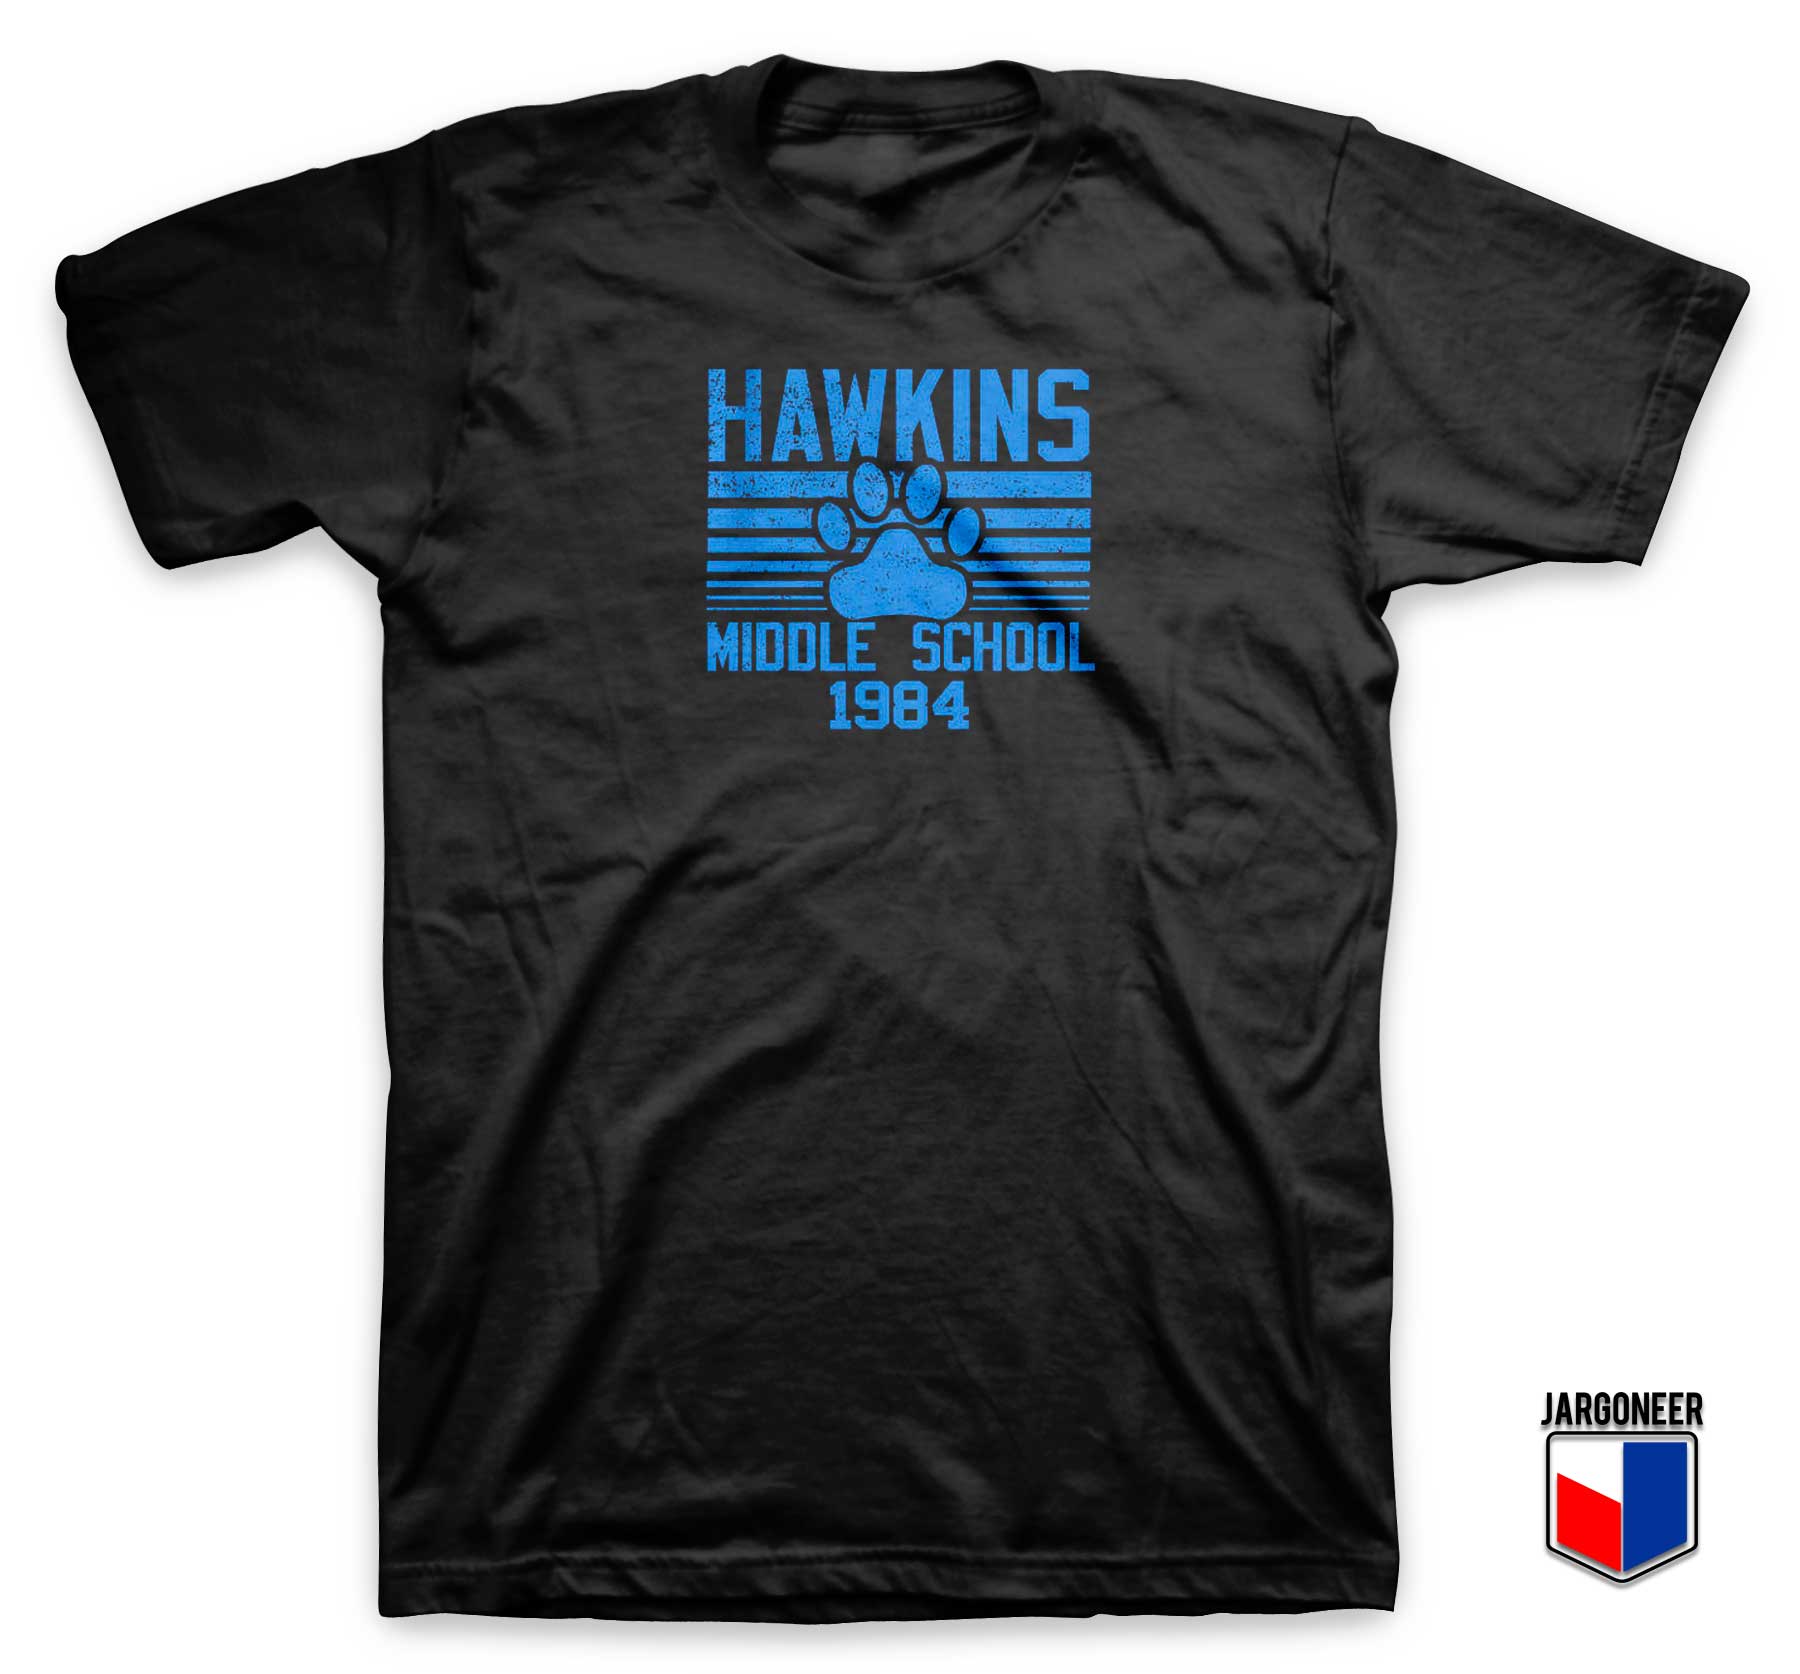 Hawkins Middle School 1984 T Shirt - Shop Unique Graphic Cool Shirt Designs